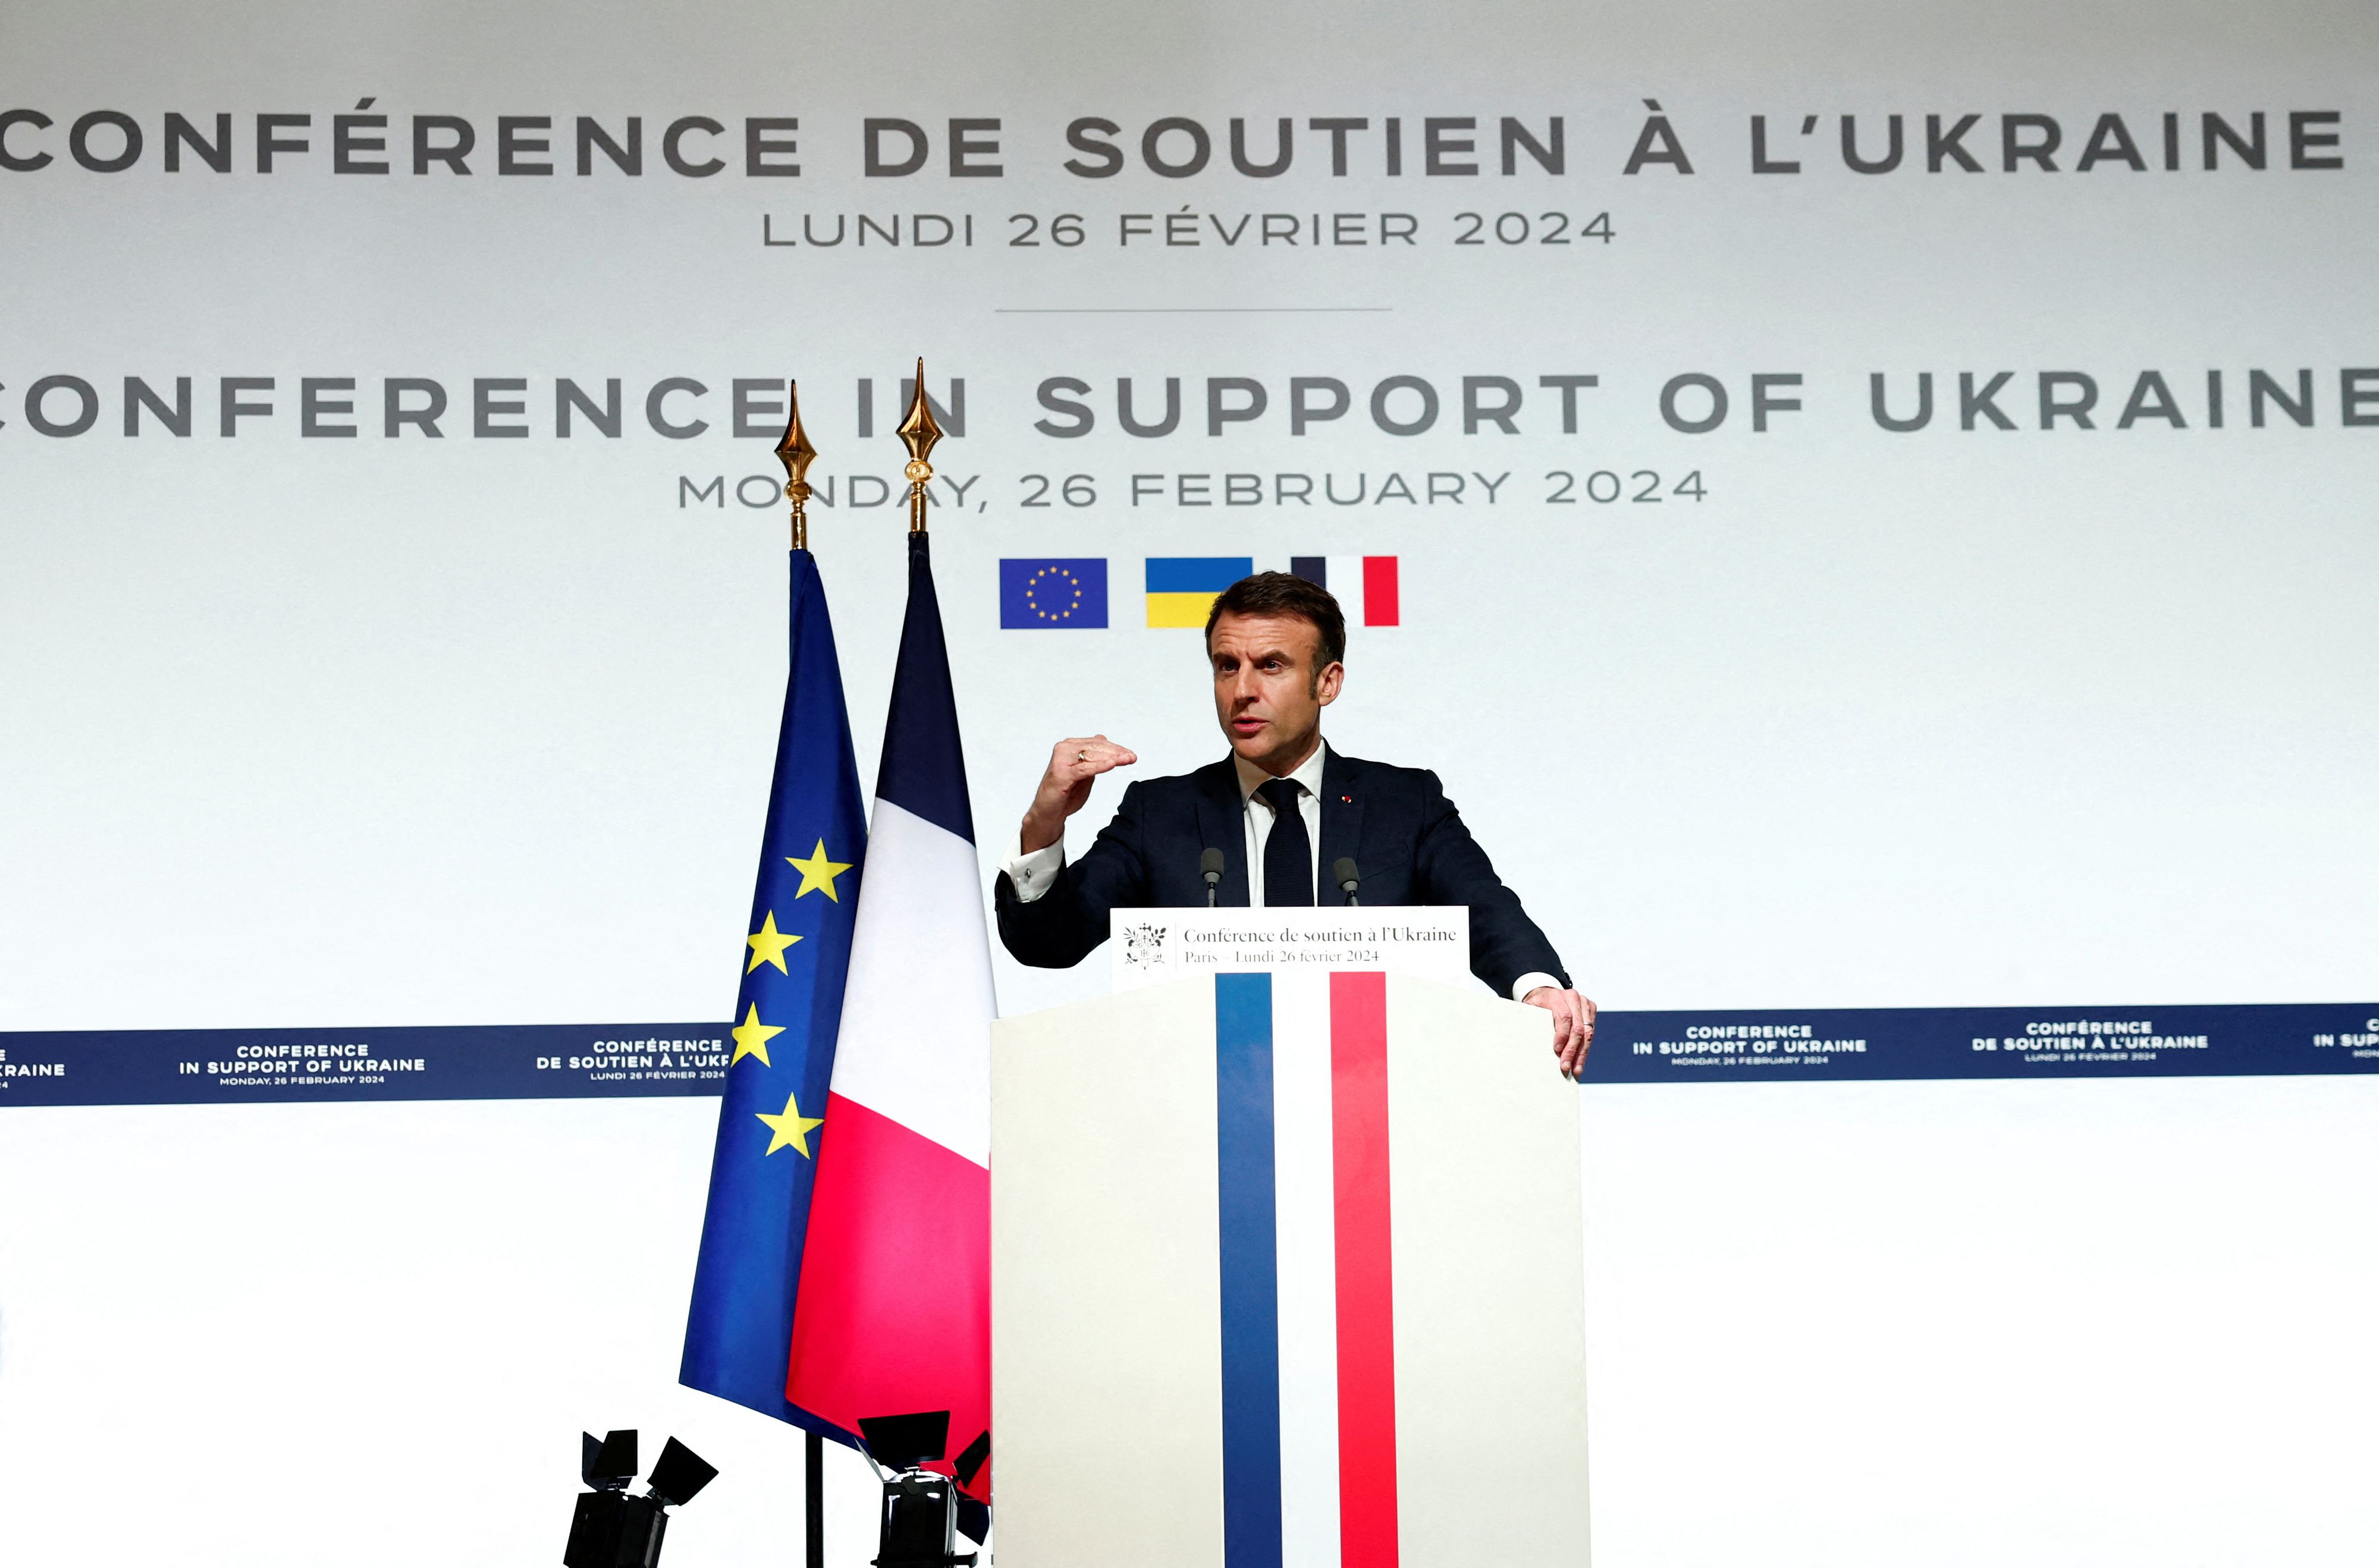 L'hypothèse de Macron sème le trouble en Europe